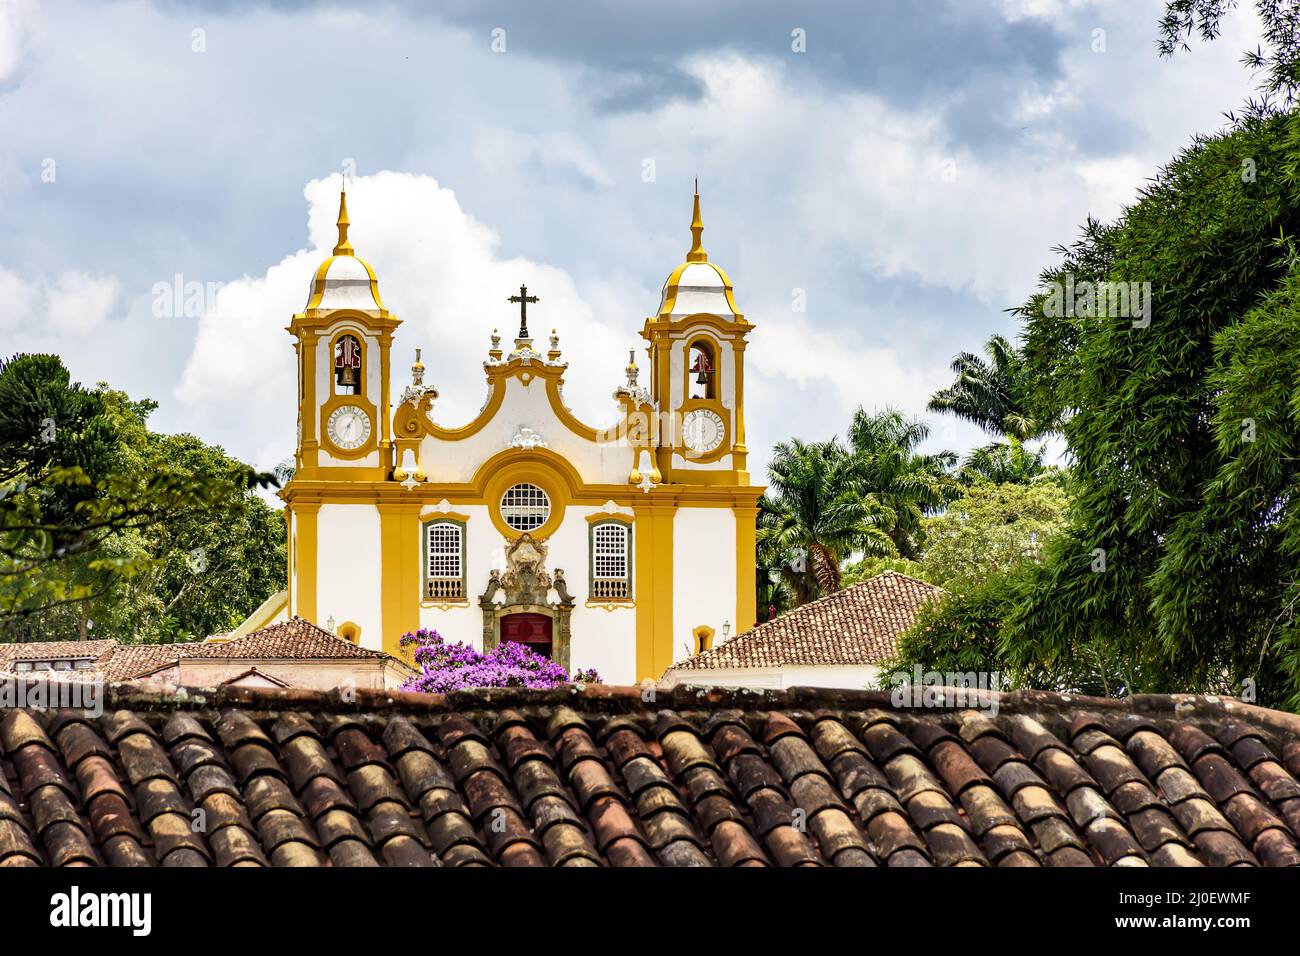 Vista de la iglesia histórica entre tejados y vegetación en la ciudad de Tiradentes Foto de stock